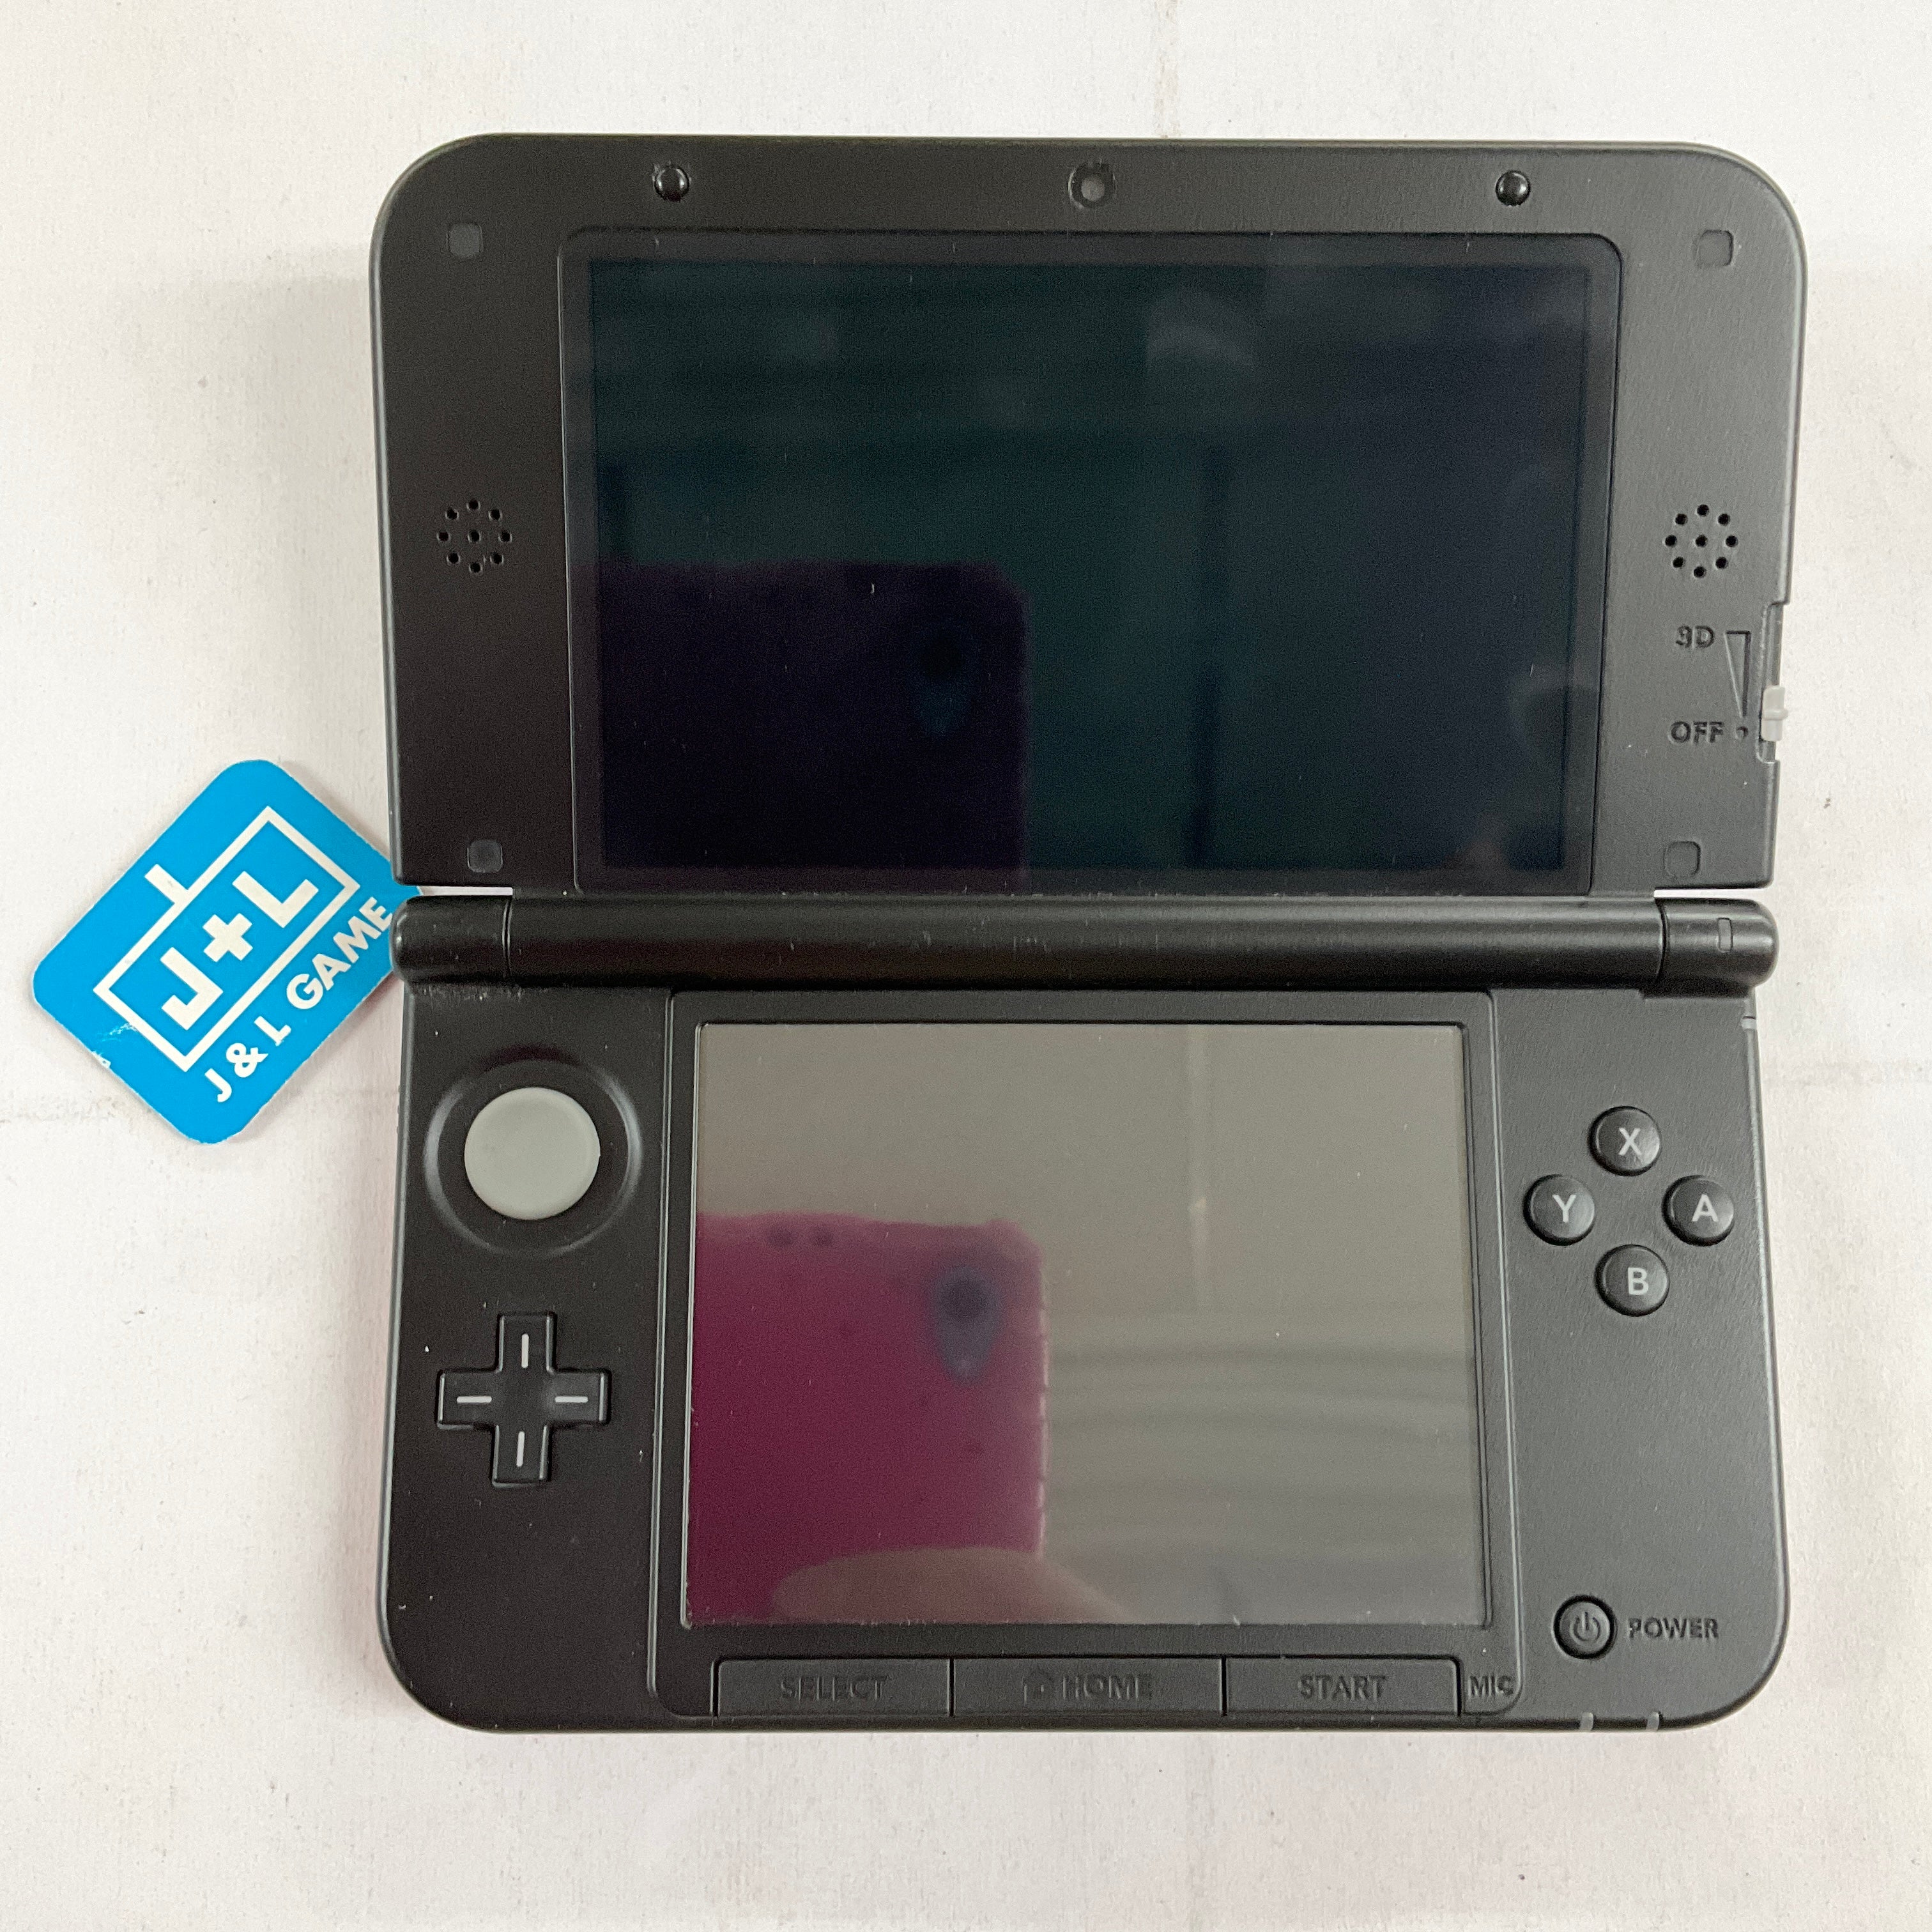 Nintendo 3DS XL (Super Smash Bros. Red) - Nintendo 3DS [Pre-Owned] Consoles Nintendo   